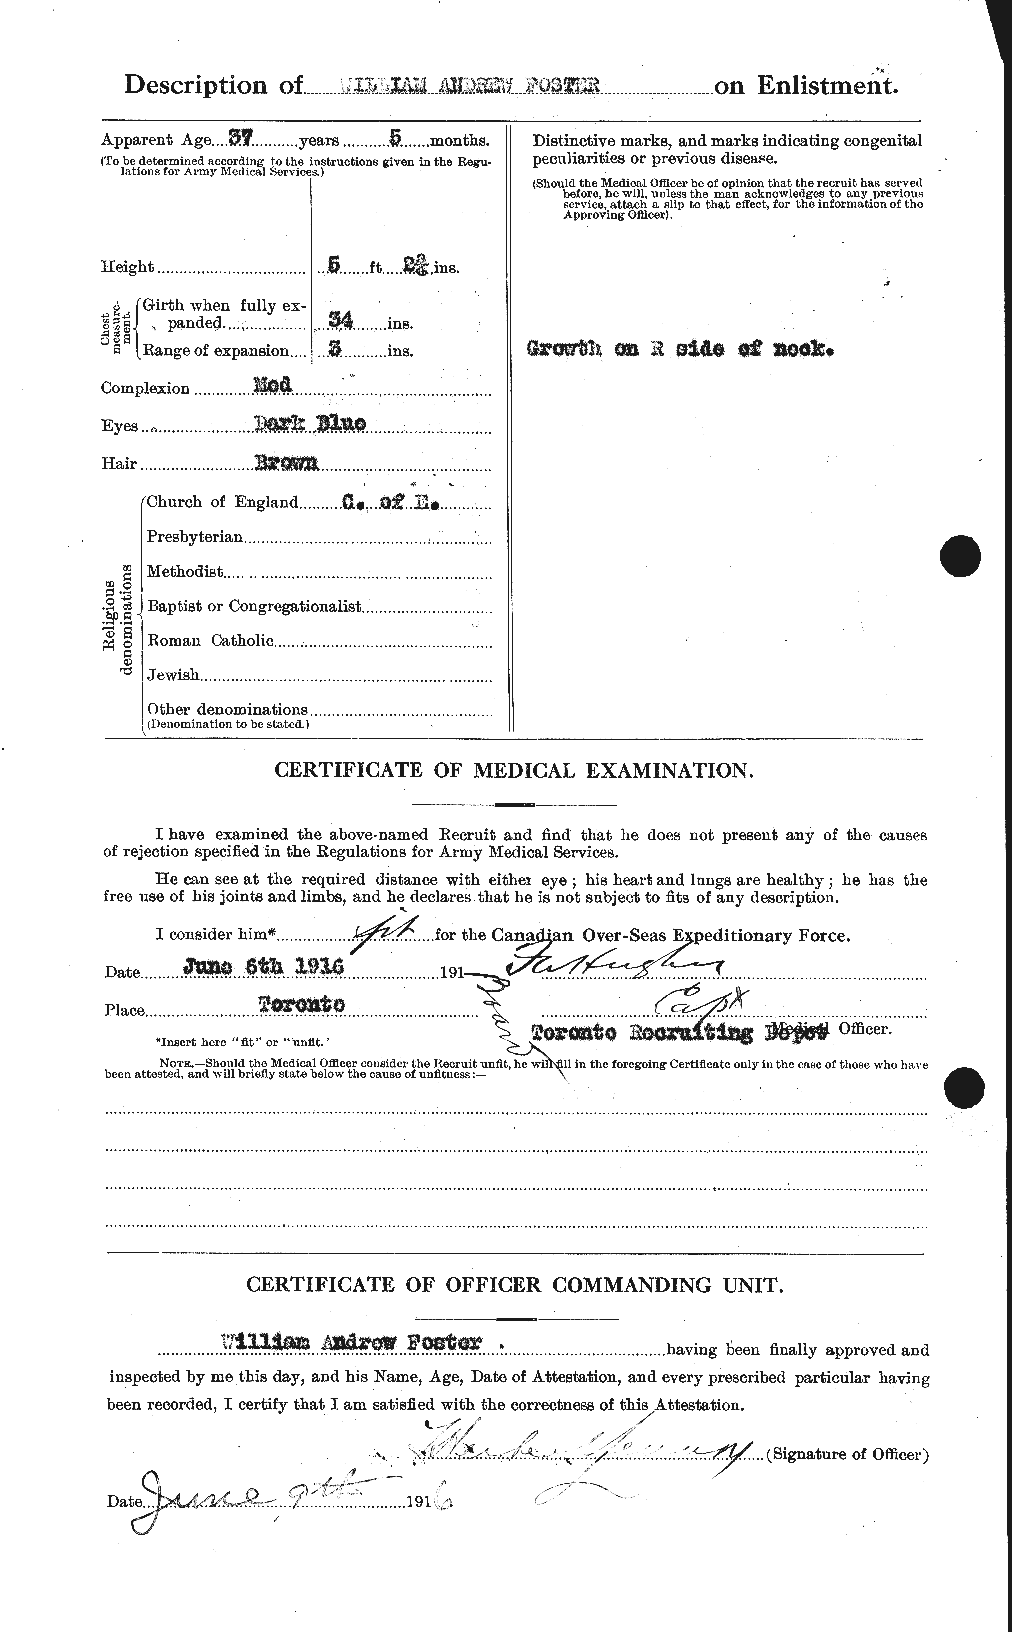 Dossiers du Personnel de la Première Guerre mondiale - CEC 328728b